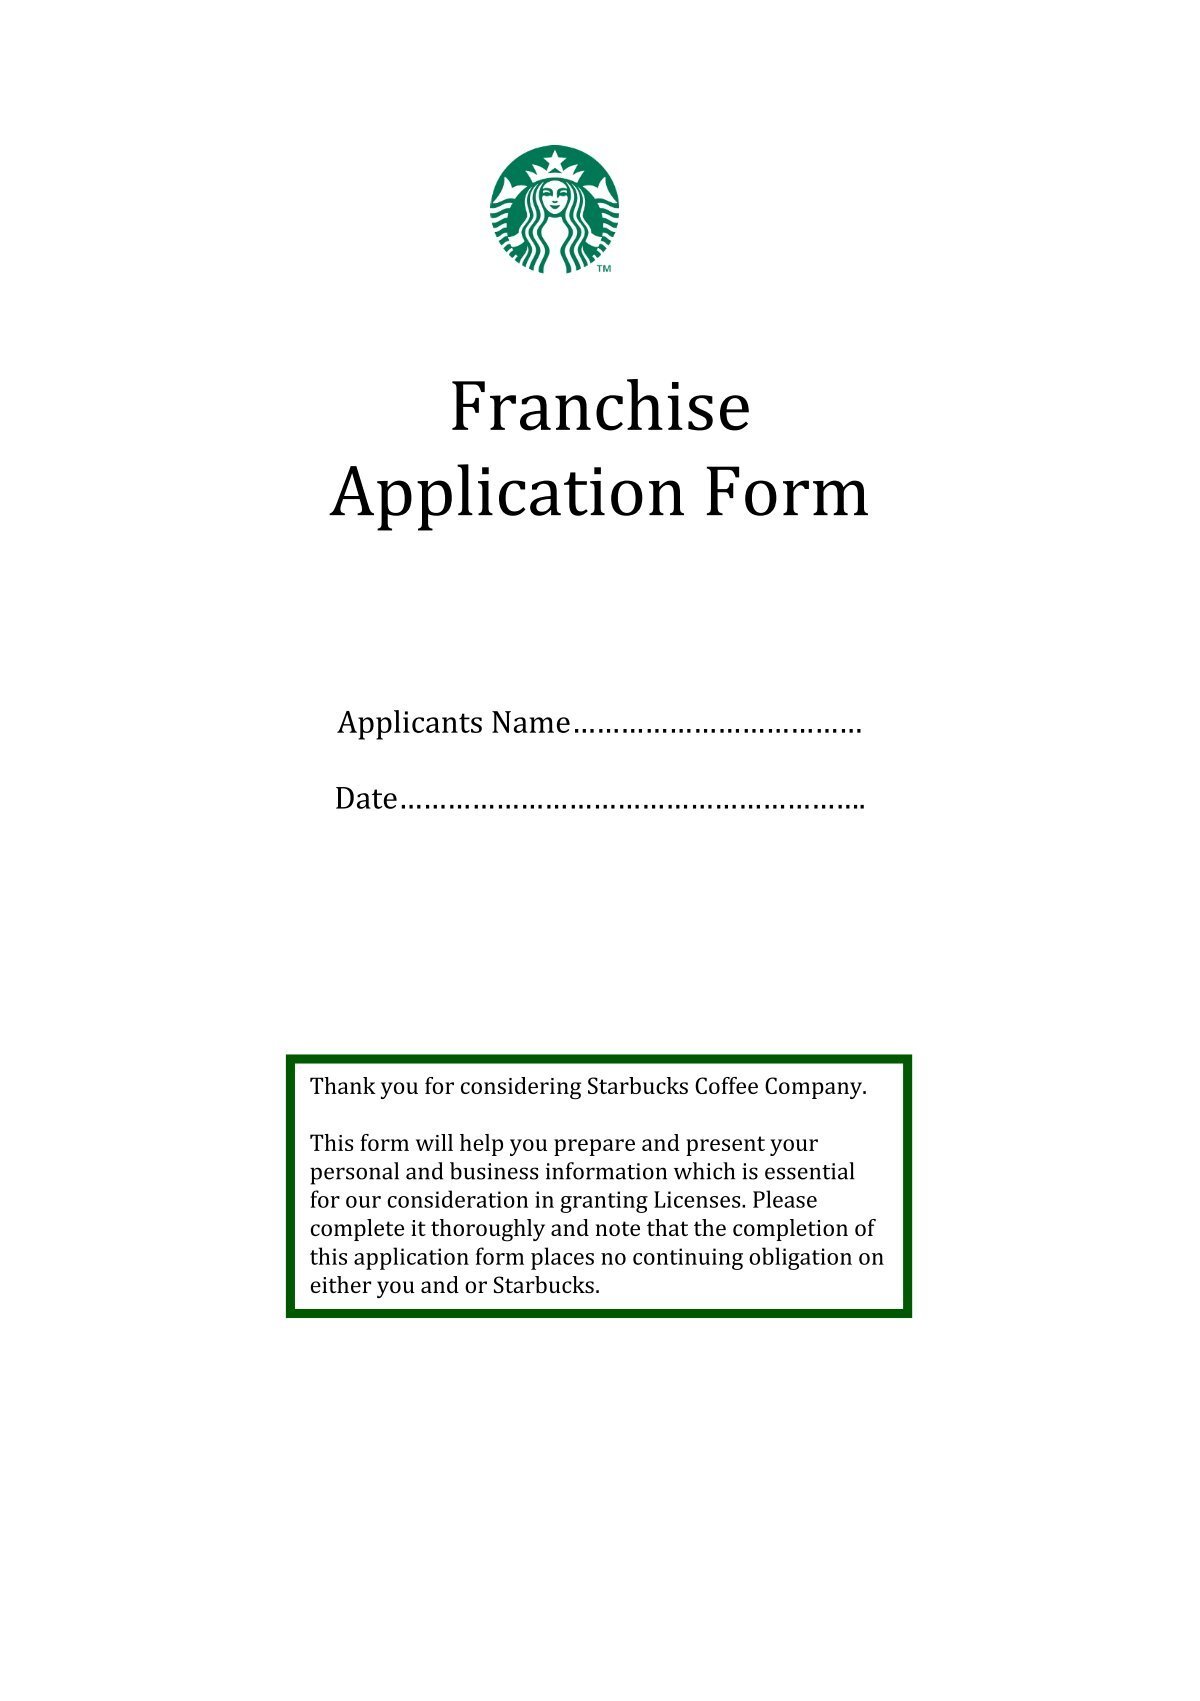 franchise-application-form-starbucks